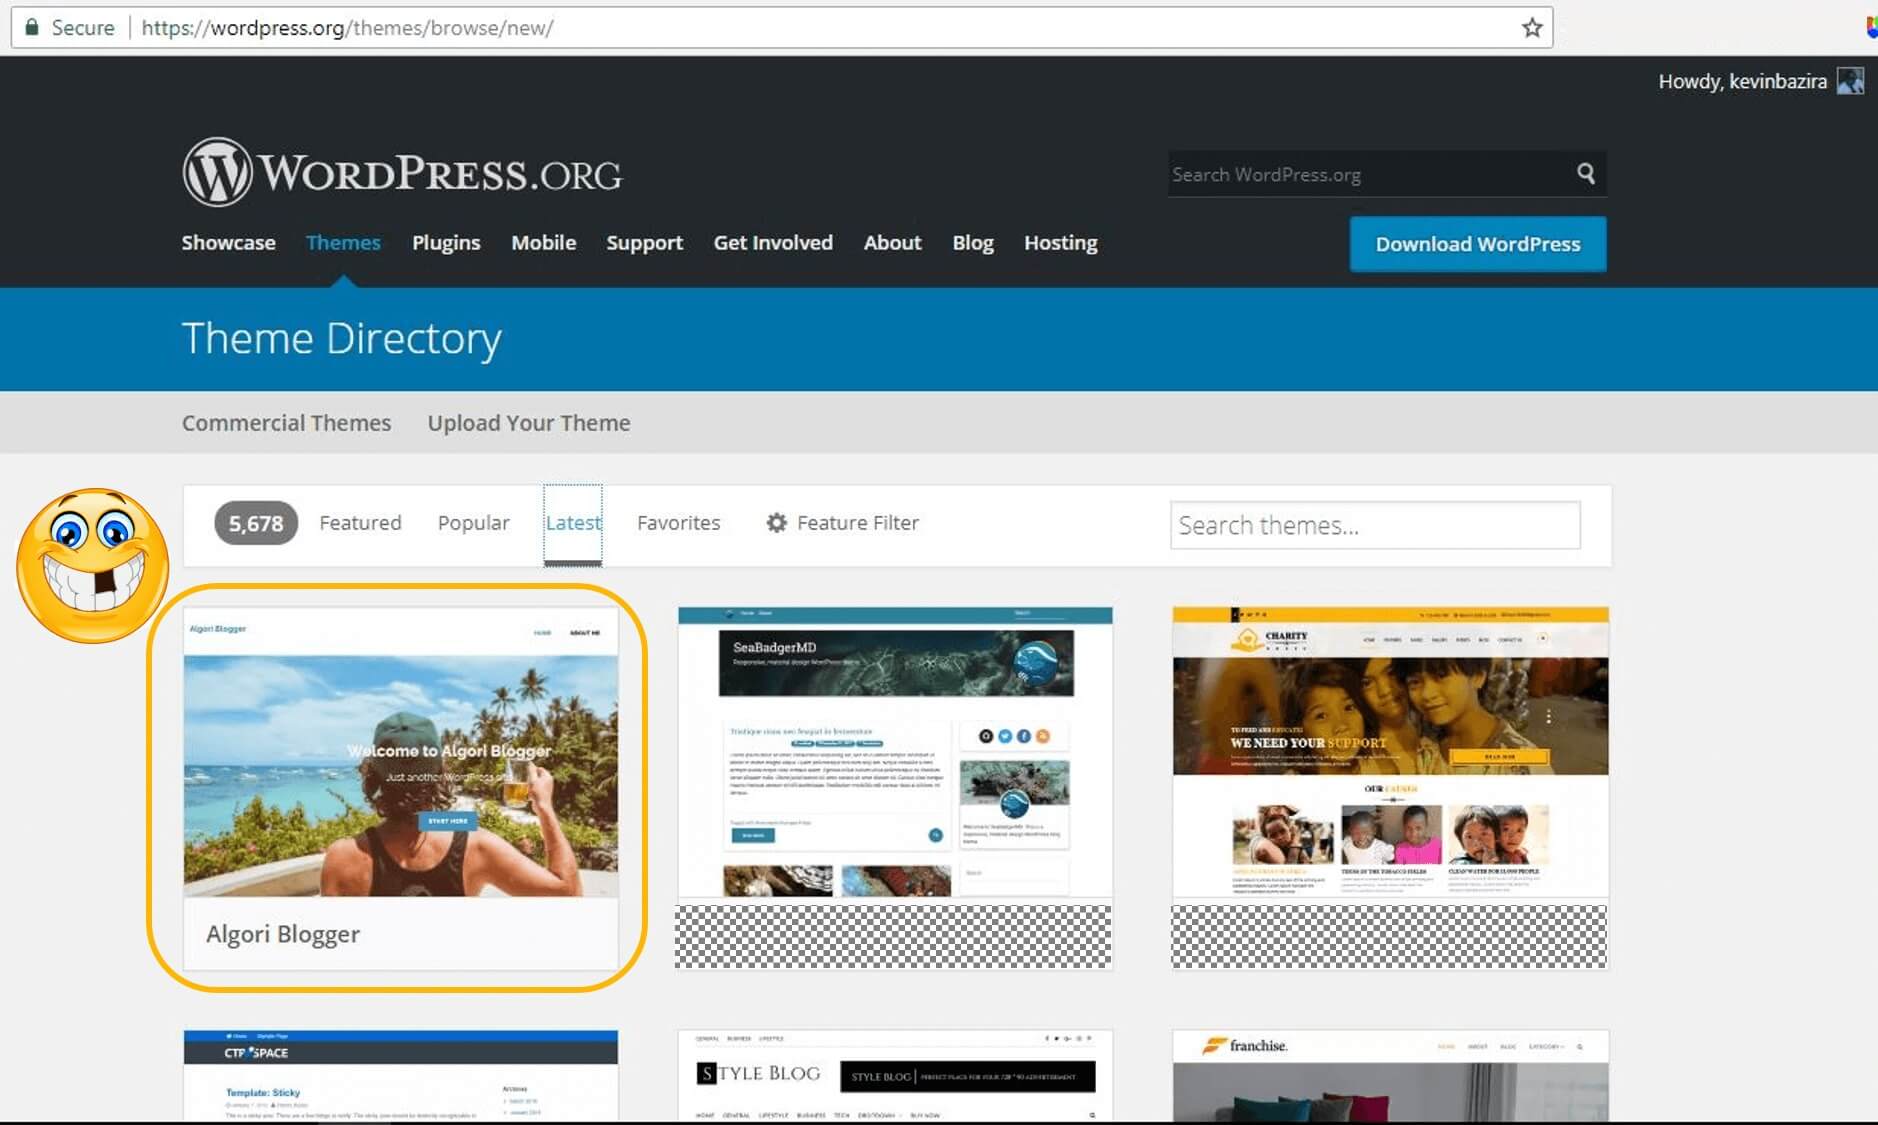 Algori Blogger Live in WP Theme Directory